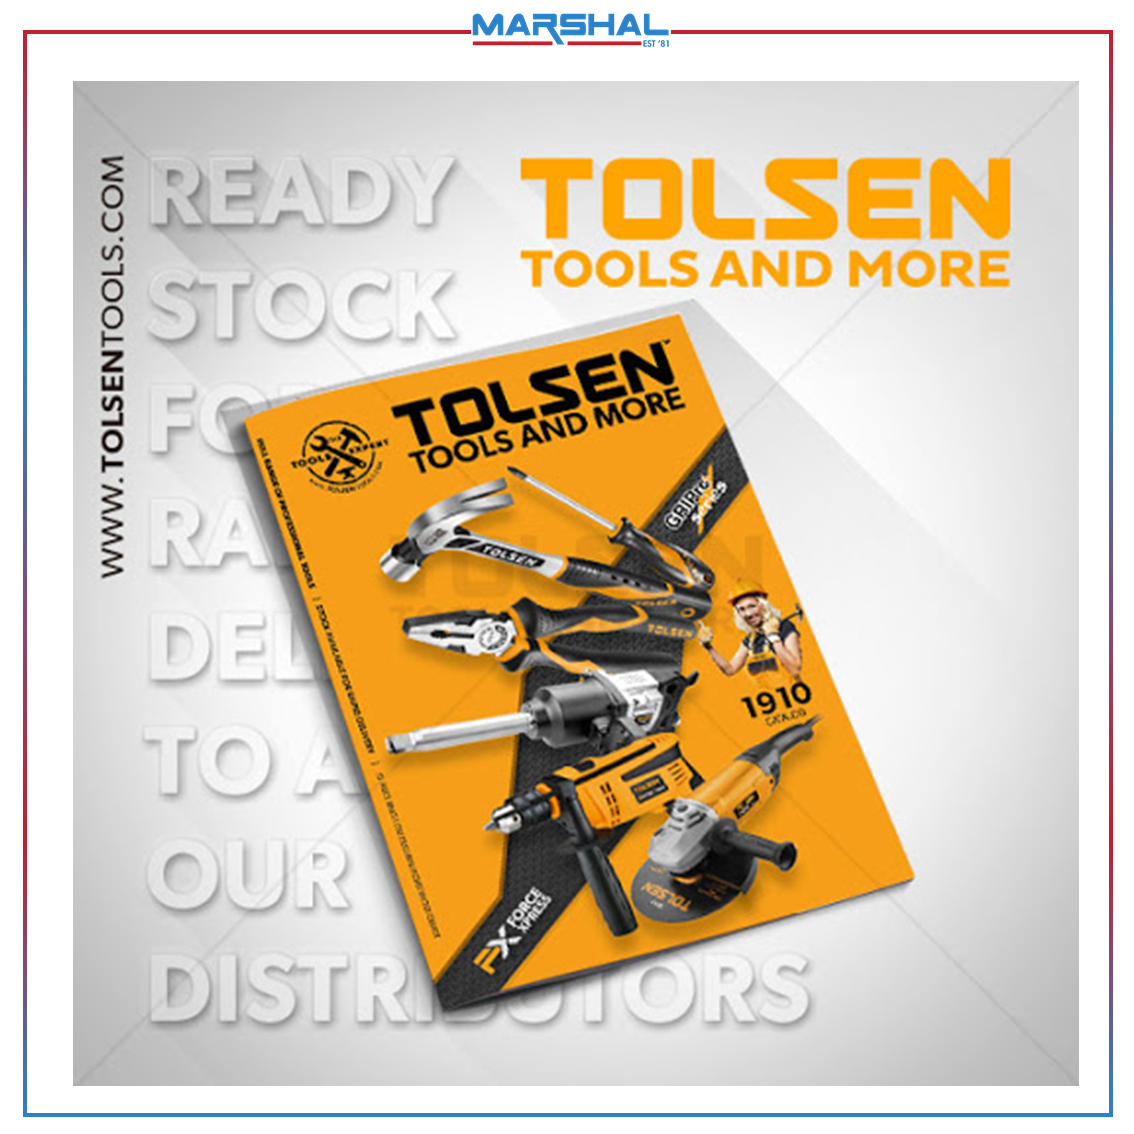 MARSHALL - TOLSEN Catalogue Catalogue